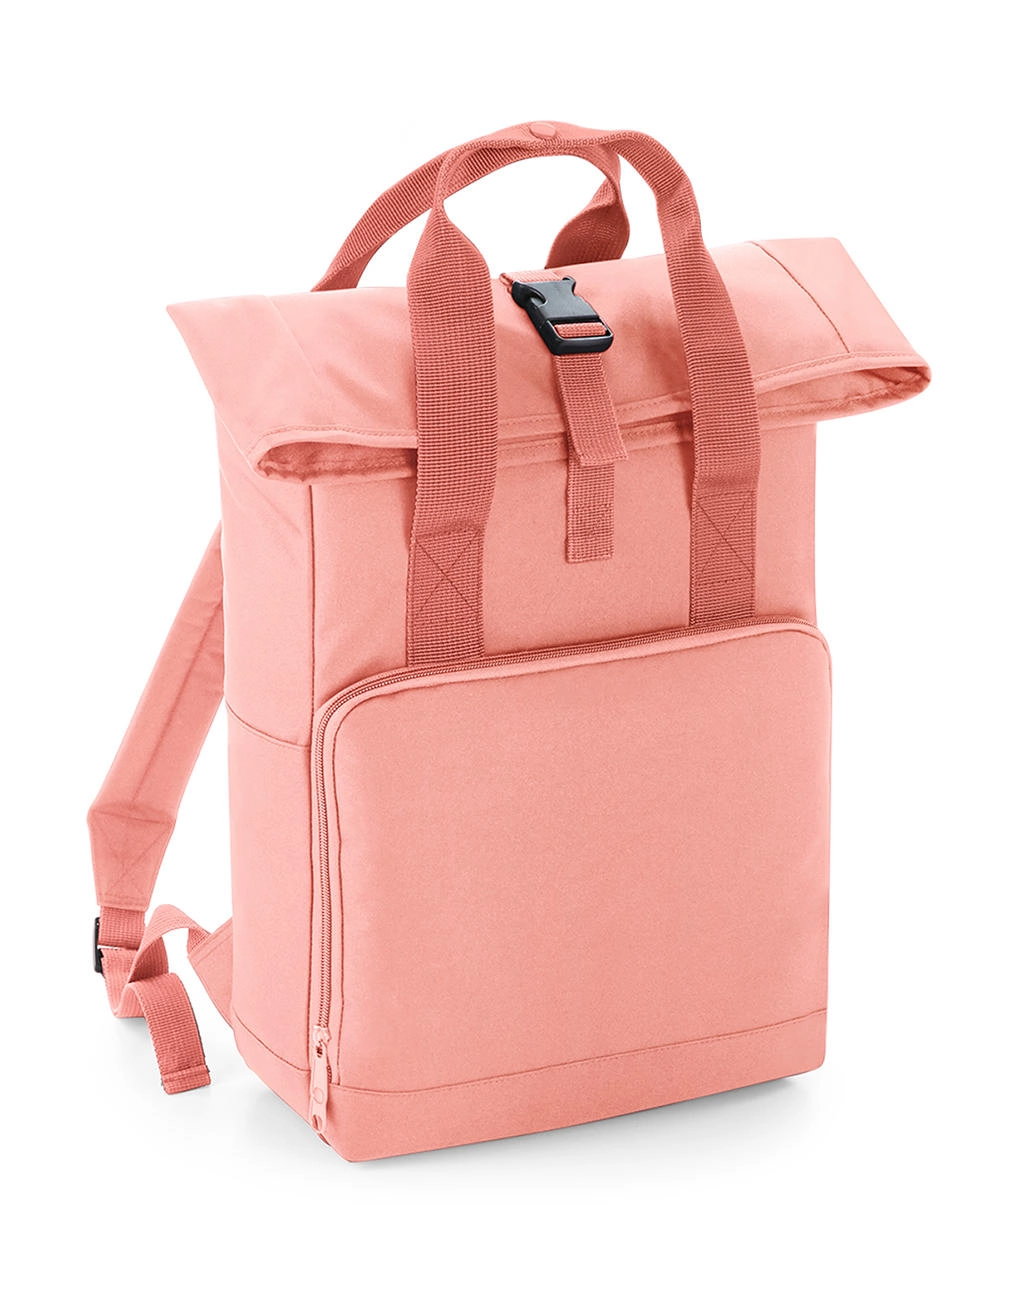 Twin Handle Roll-Top Backpack zum Besticken und Bedrucken in der Farbe Blush Pink mit Ihren Logo, Schriftzug oder Motiv.